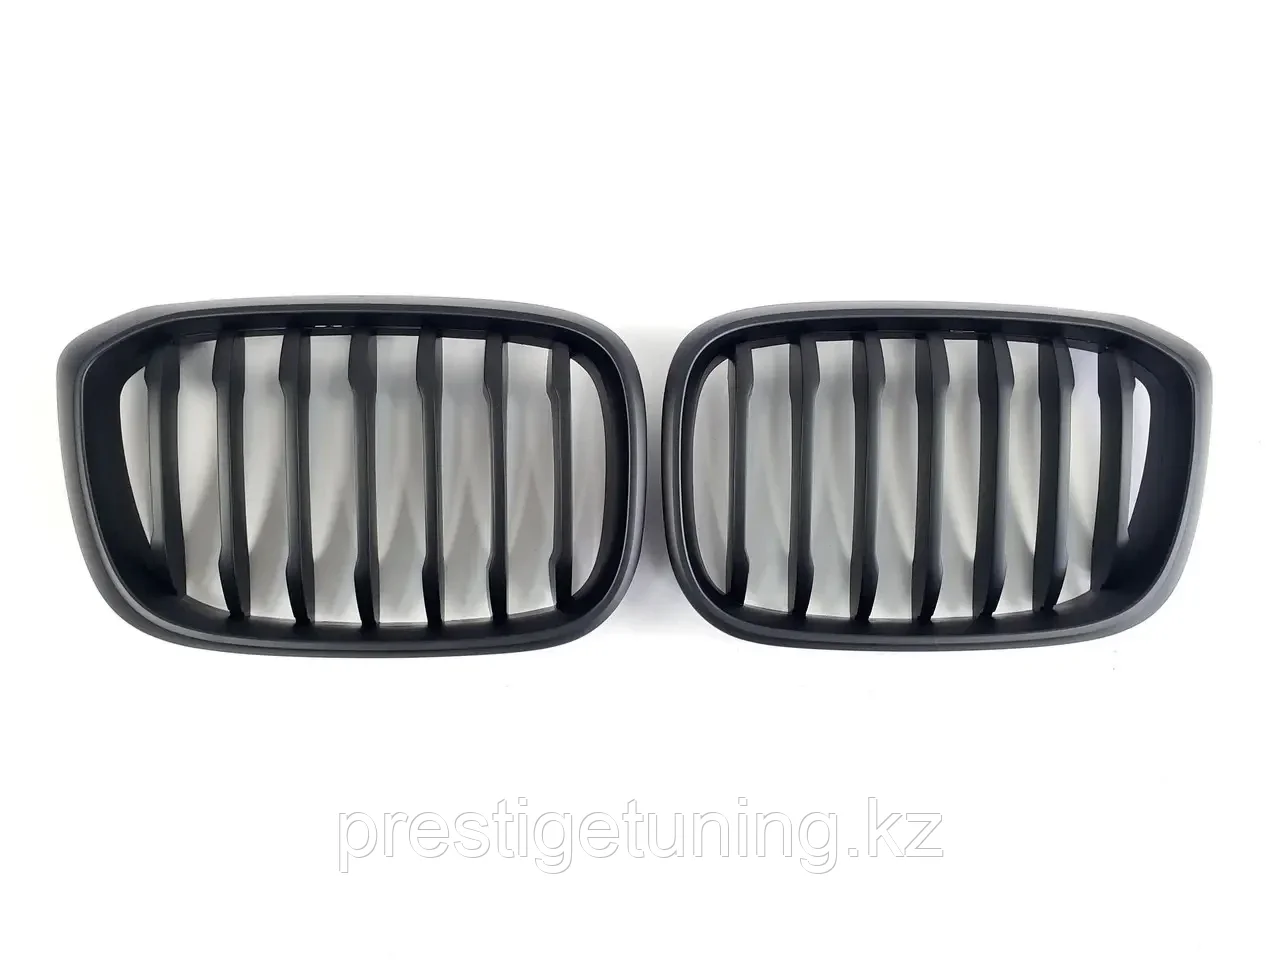 Решетка радиатора на BMW X4 (G02) 2018-21 тюнинг ноздри (Черный цвет)